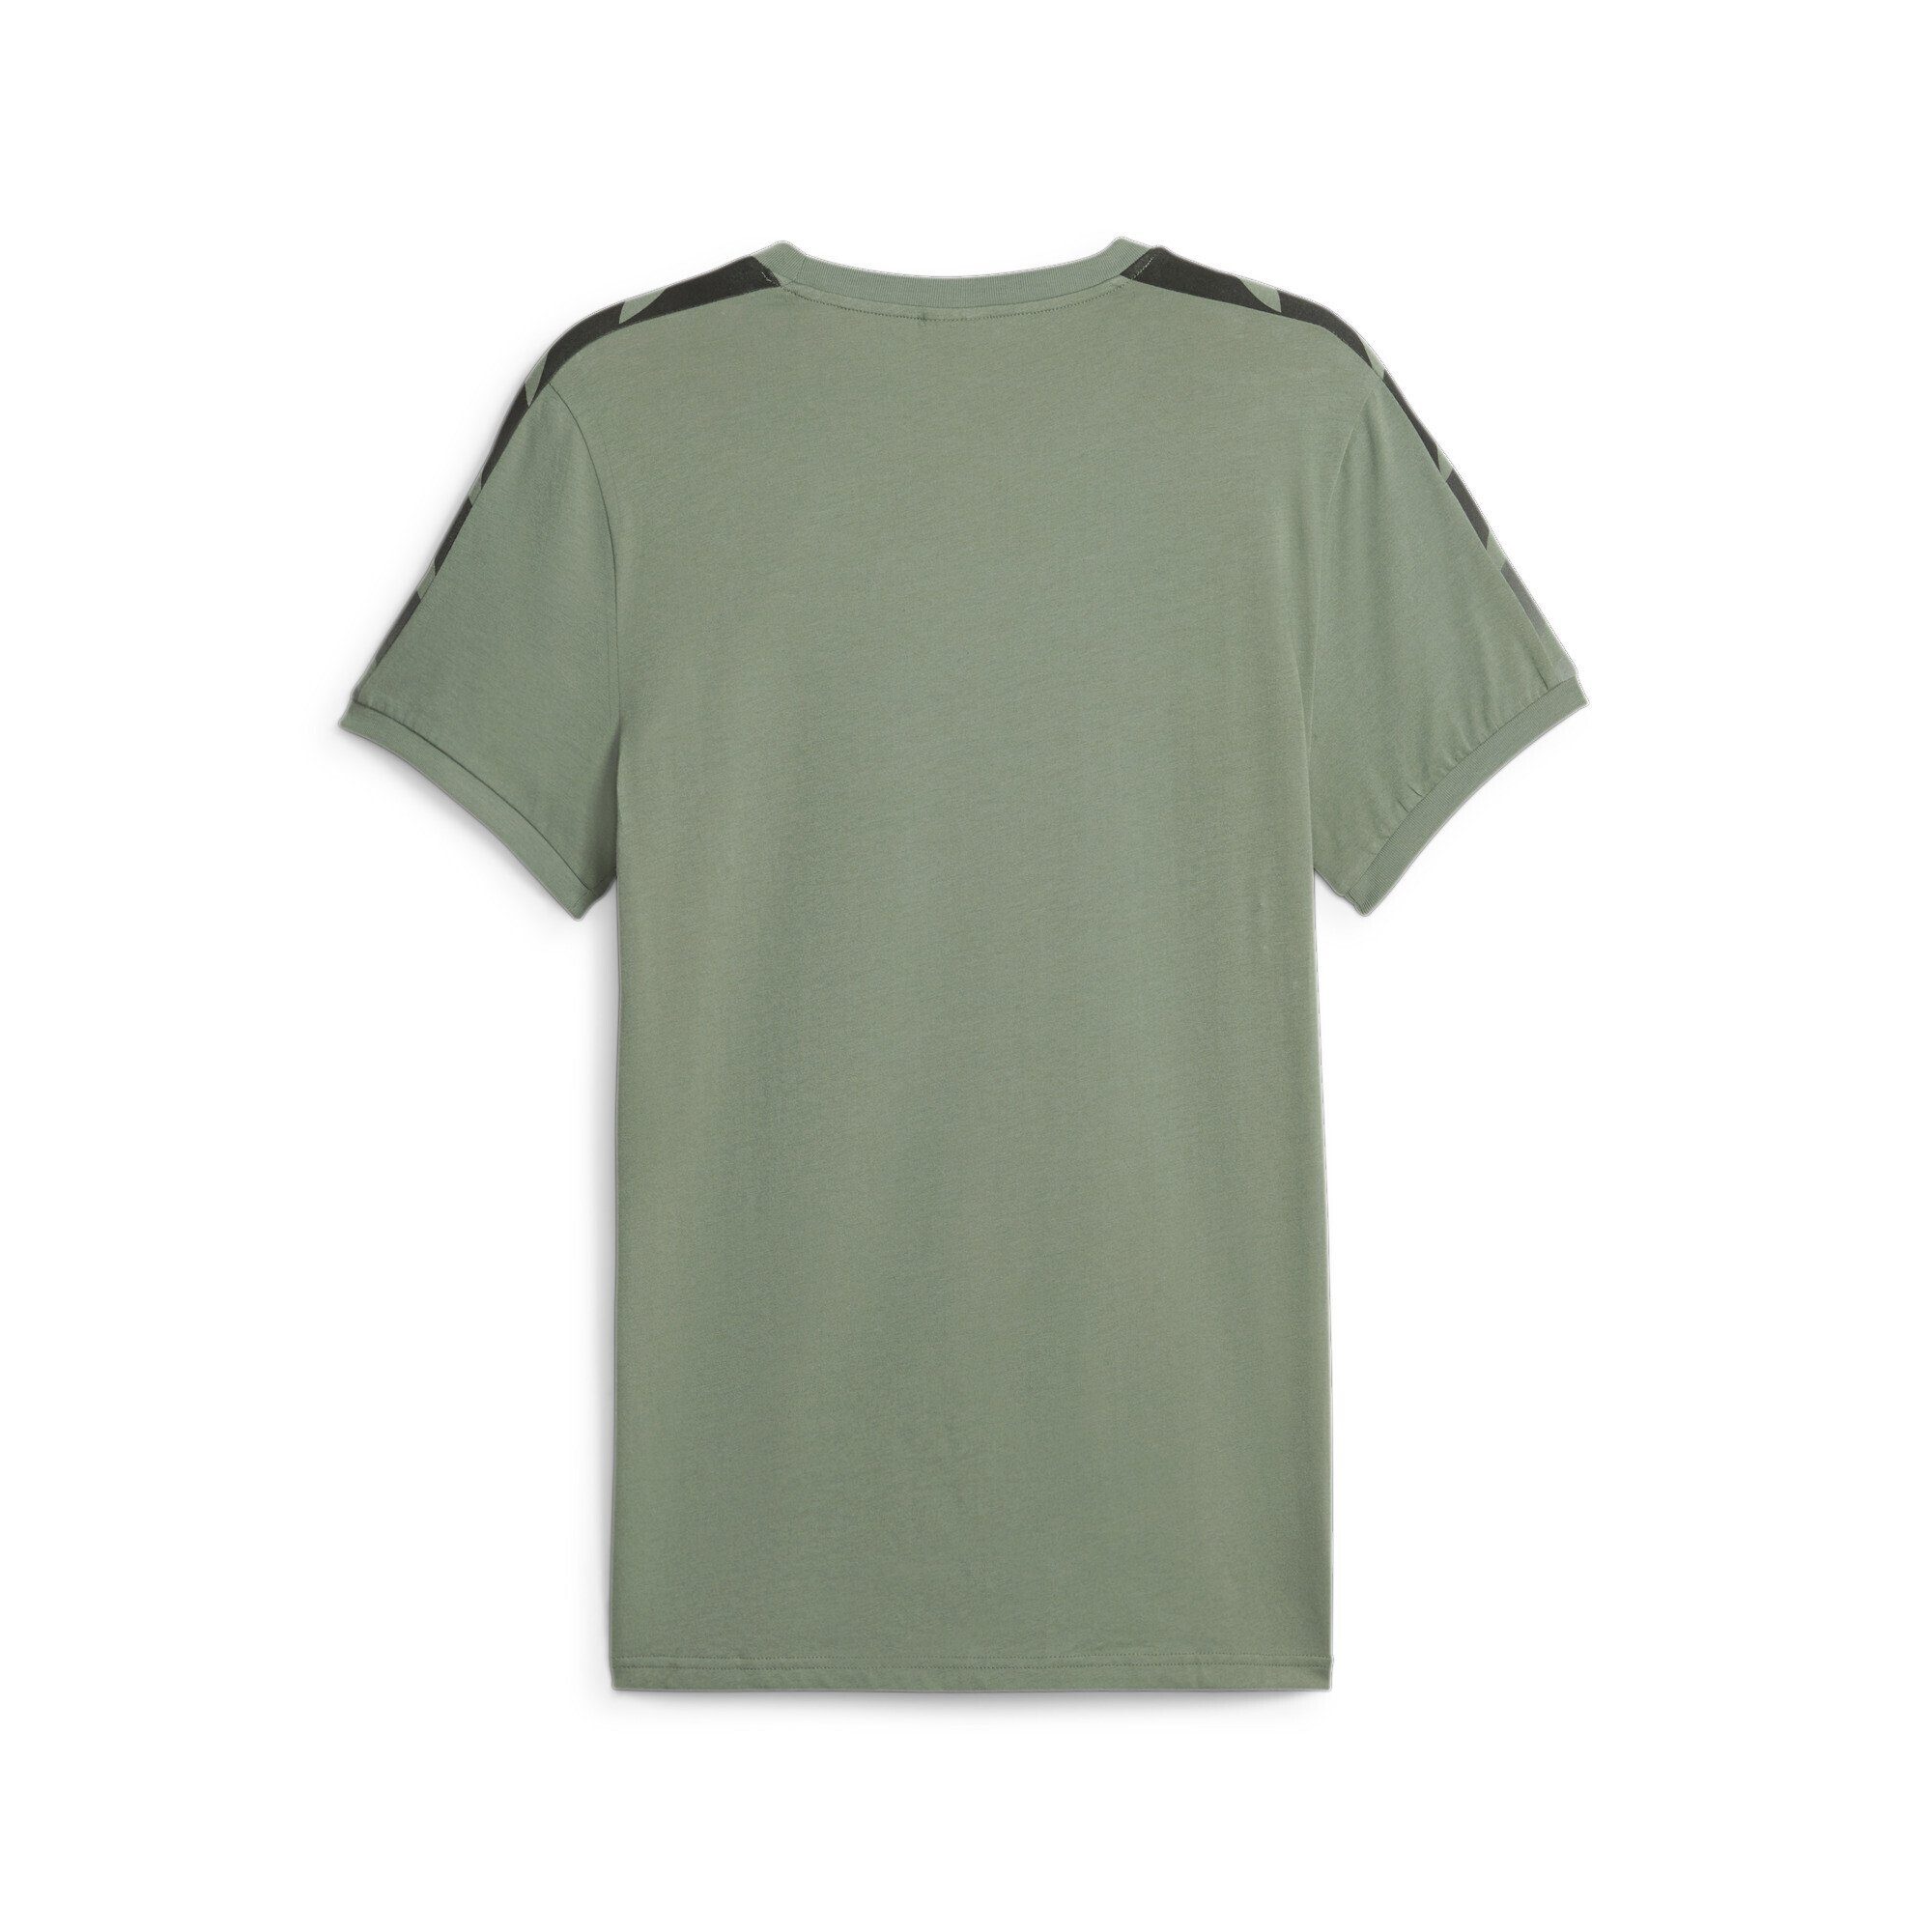 PUMA T-Shirt T7 Green Herren Sport Eucalyptus T-Shirt